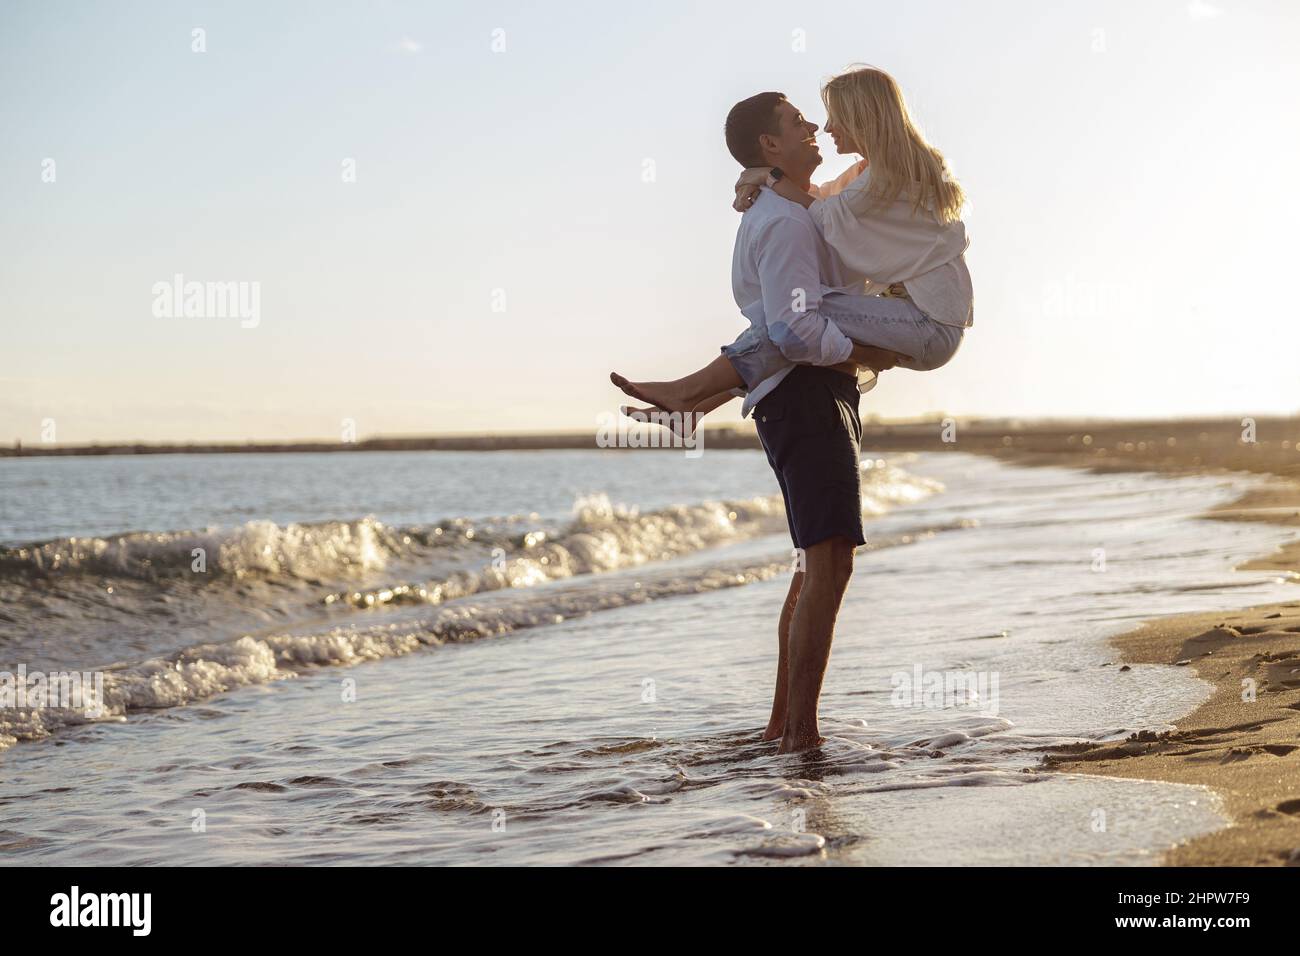 Pleine photo de l'homme tenant la femme dans ses bras debout au bord de la mer Banque D'Images